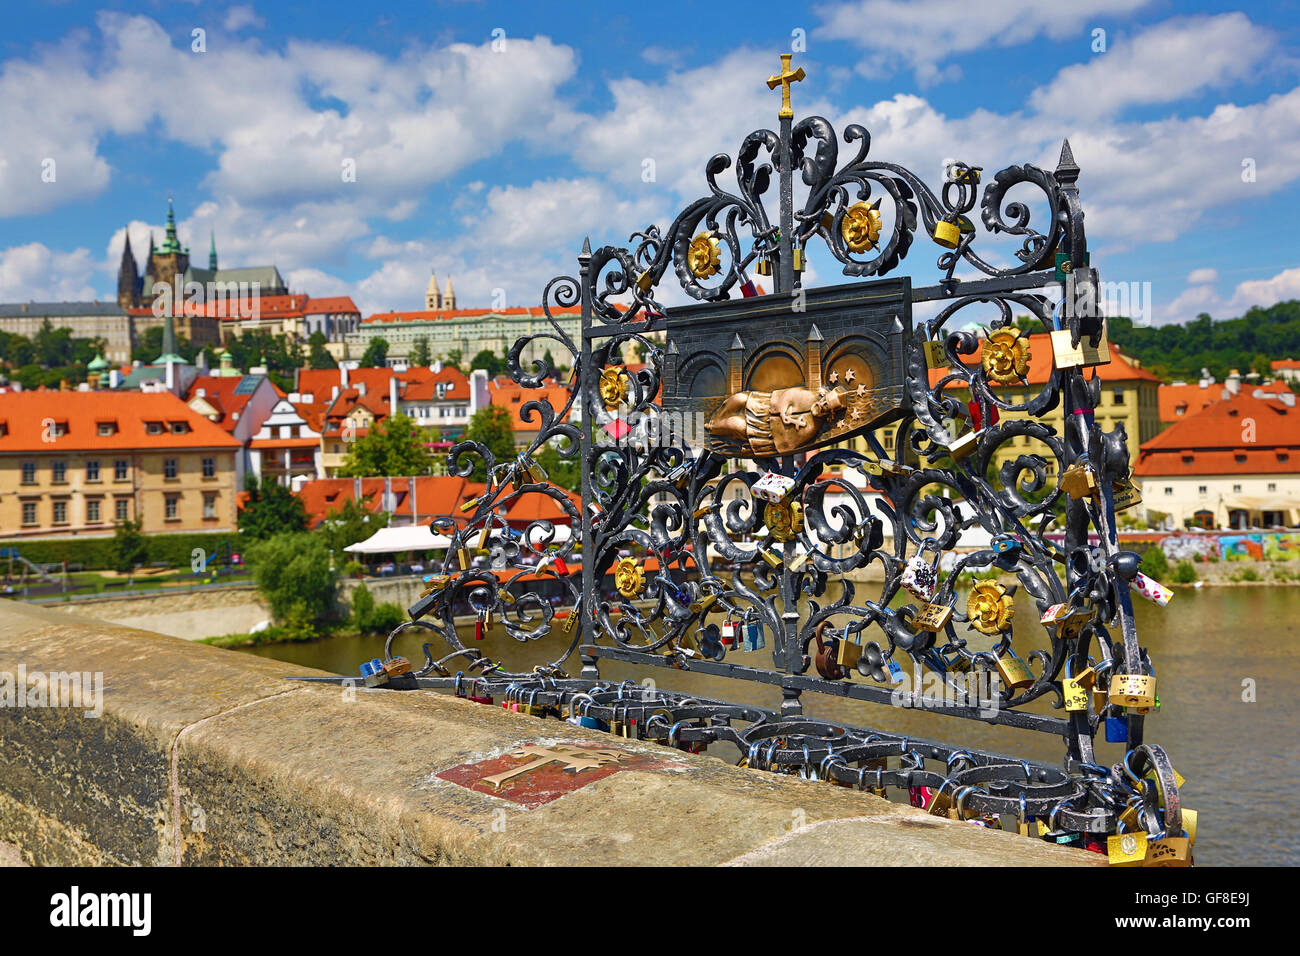 Memorial Plate for Saint John of Nepomuk on the Charles Bridge, Prague, Czech Republic Stock Photo